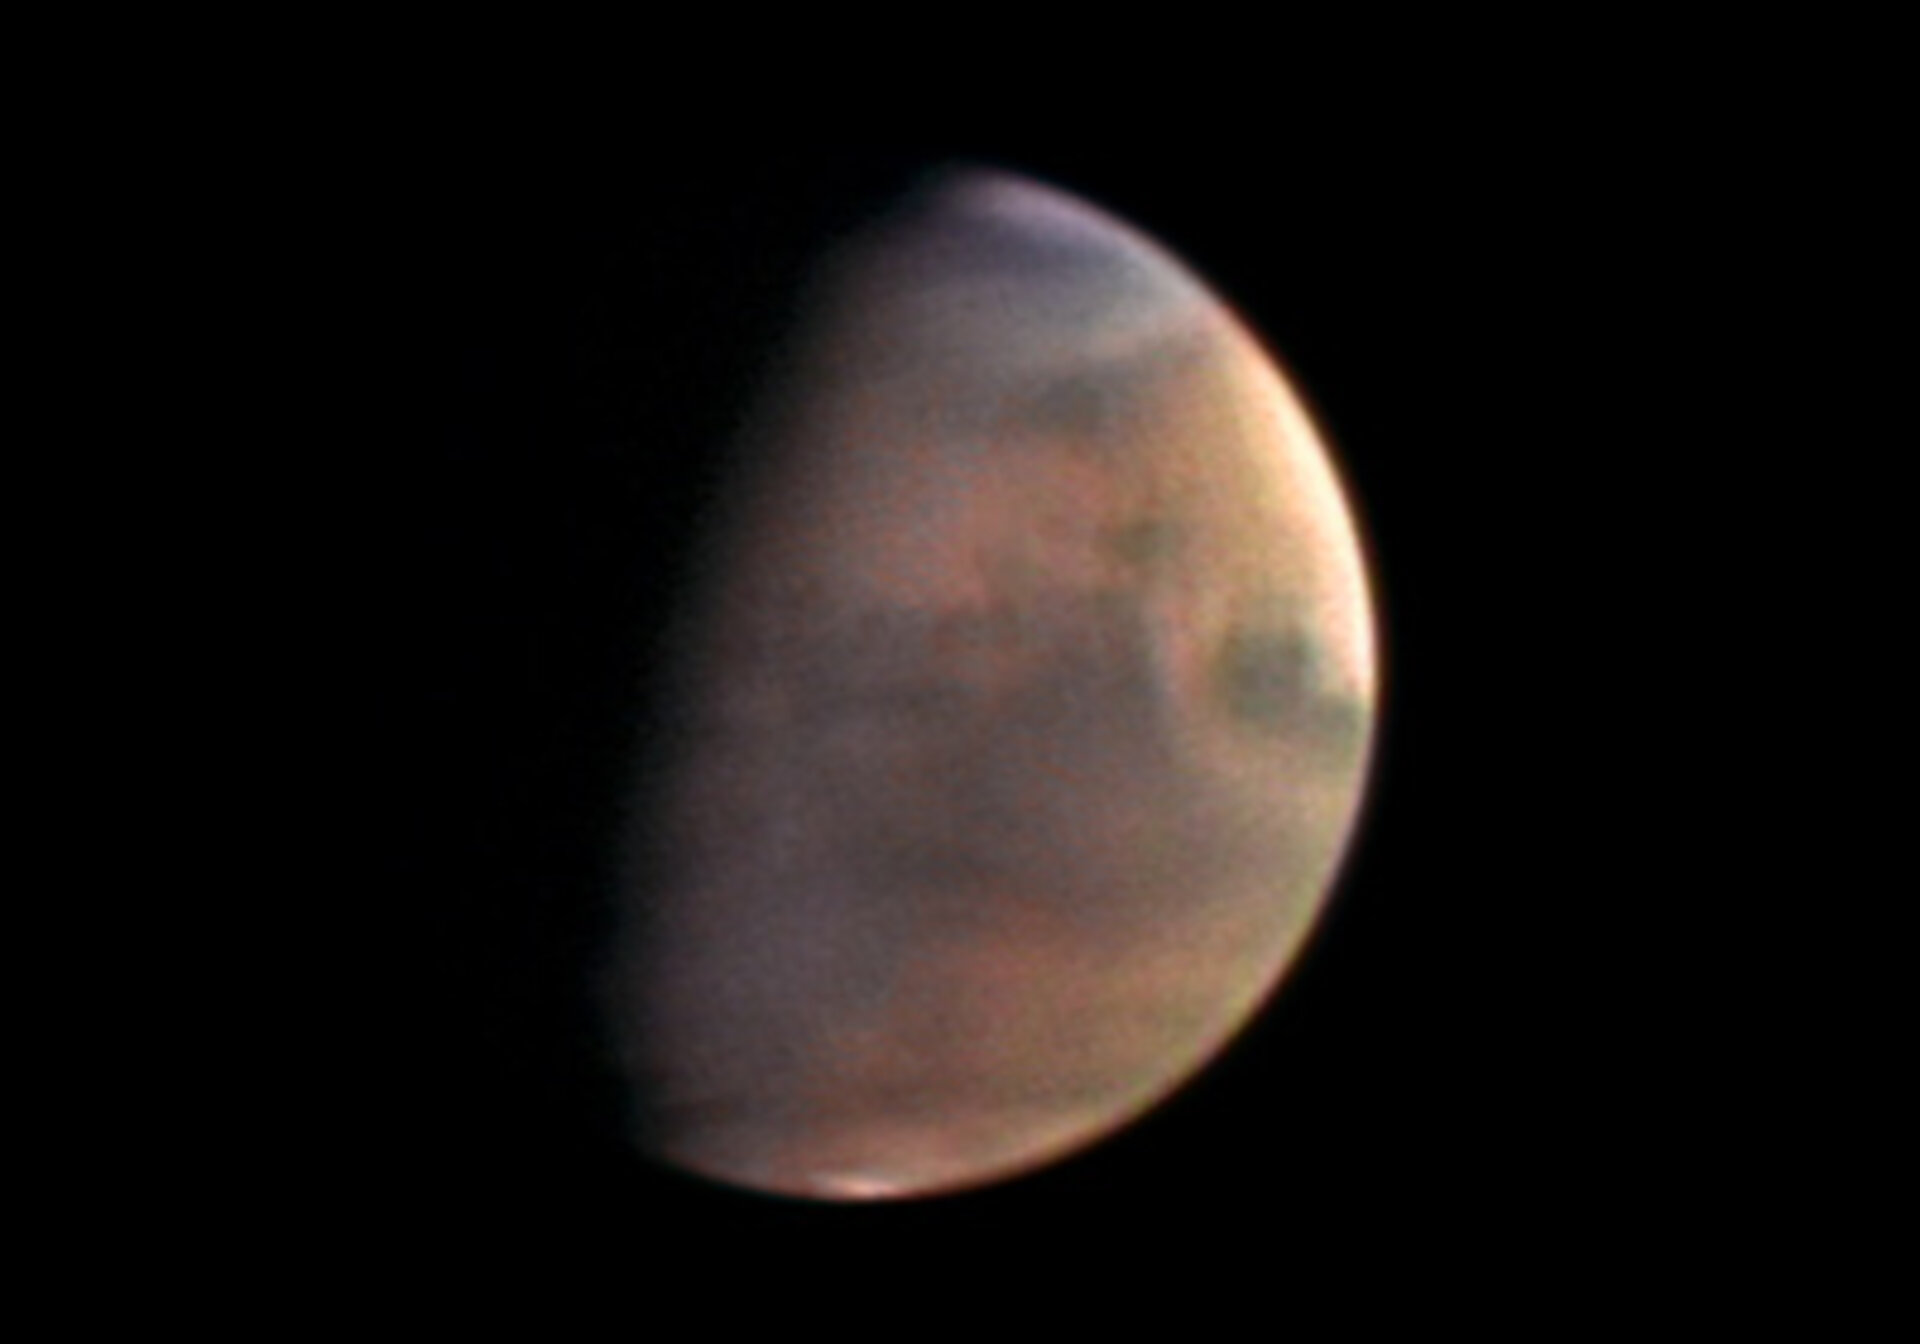 Mars from 5.5 million km, taken 1 December